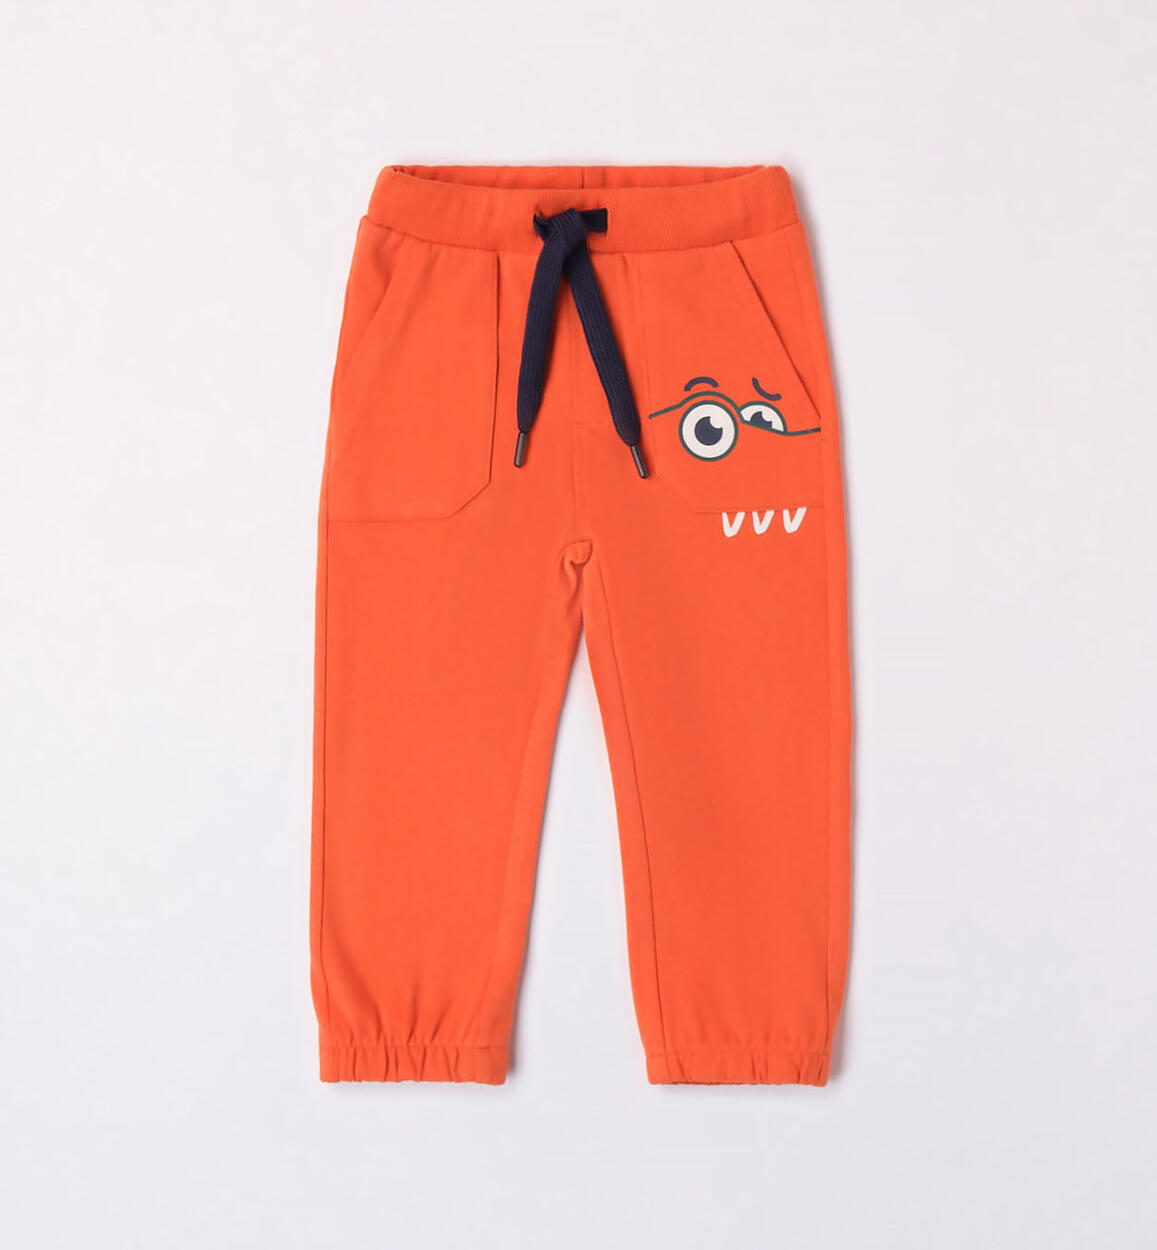 Pantalone tuta arancione per bambino ARANCIONE Sarabanda